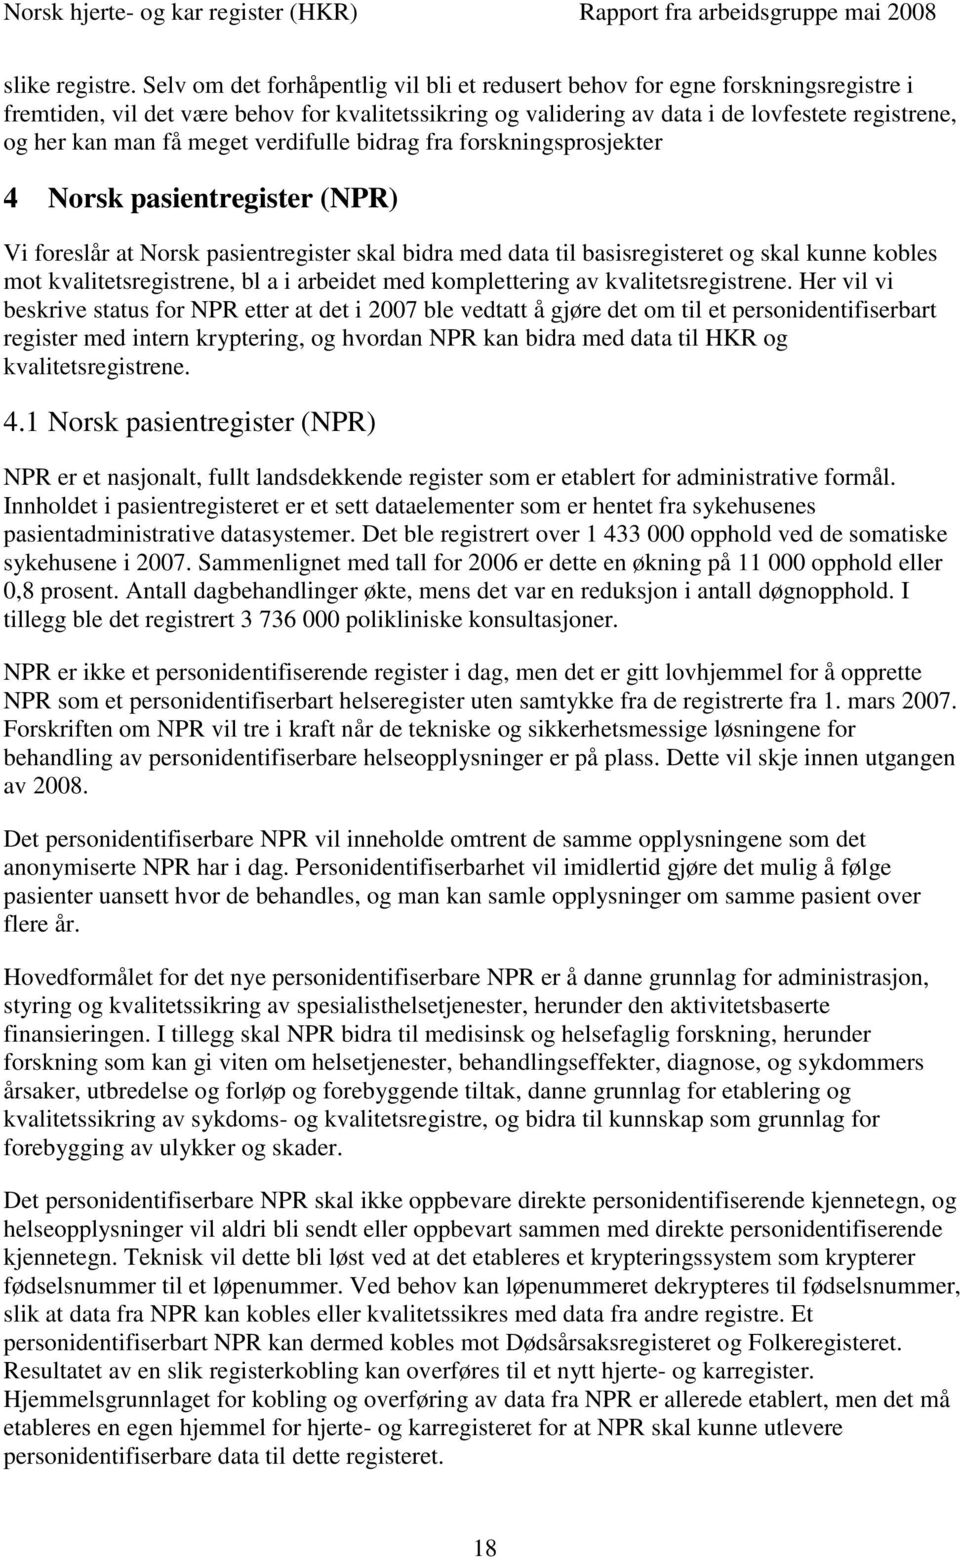 meget verdifulle bidrag fra forskningsprosjekter 4 Norsk pasientregister (NPR) Vi foreslår at Norsk pasientregister skal bidra med data til basisregisteret og skal kunne kobles mot